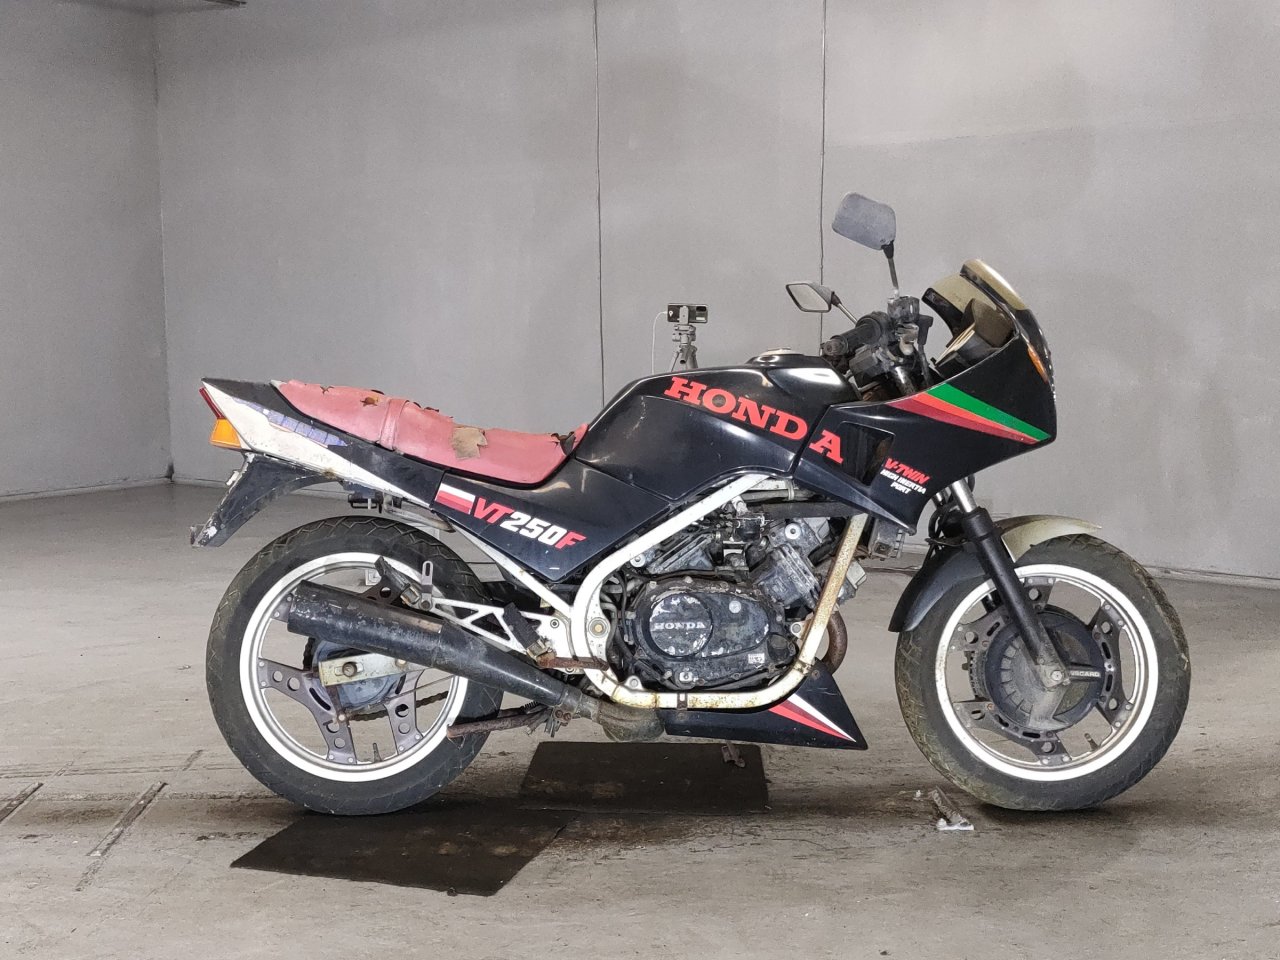 Honda VT250F - Adamoto - Motorcycles from Japan